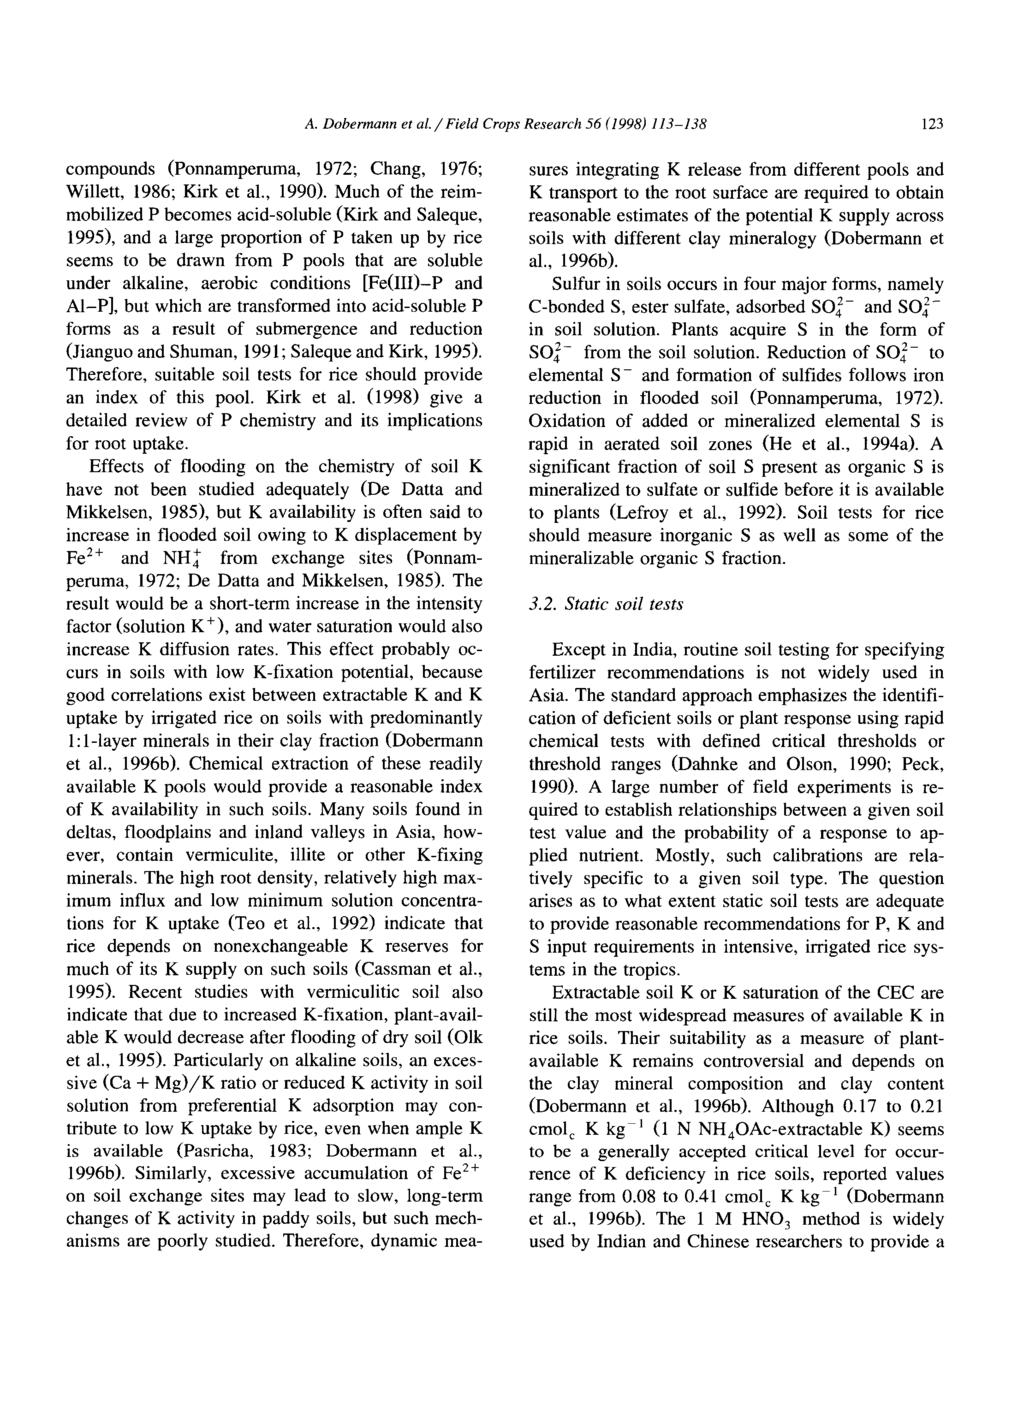 A. Dobermann et al. / Field Crops Research 56 (1998) 113-138 123 compounds (Ponnamperuma, 1972; Chang, 1976; Willett, 1986; Kirk et al., 1990).